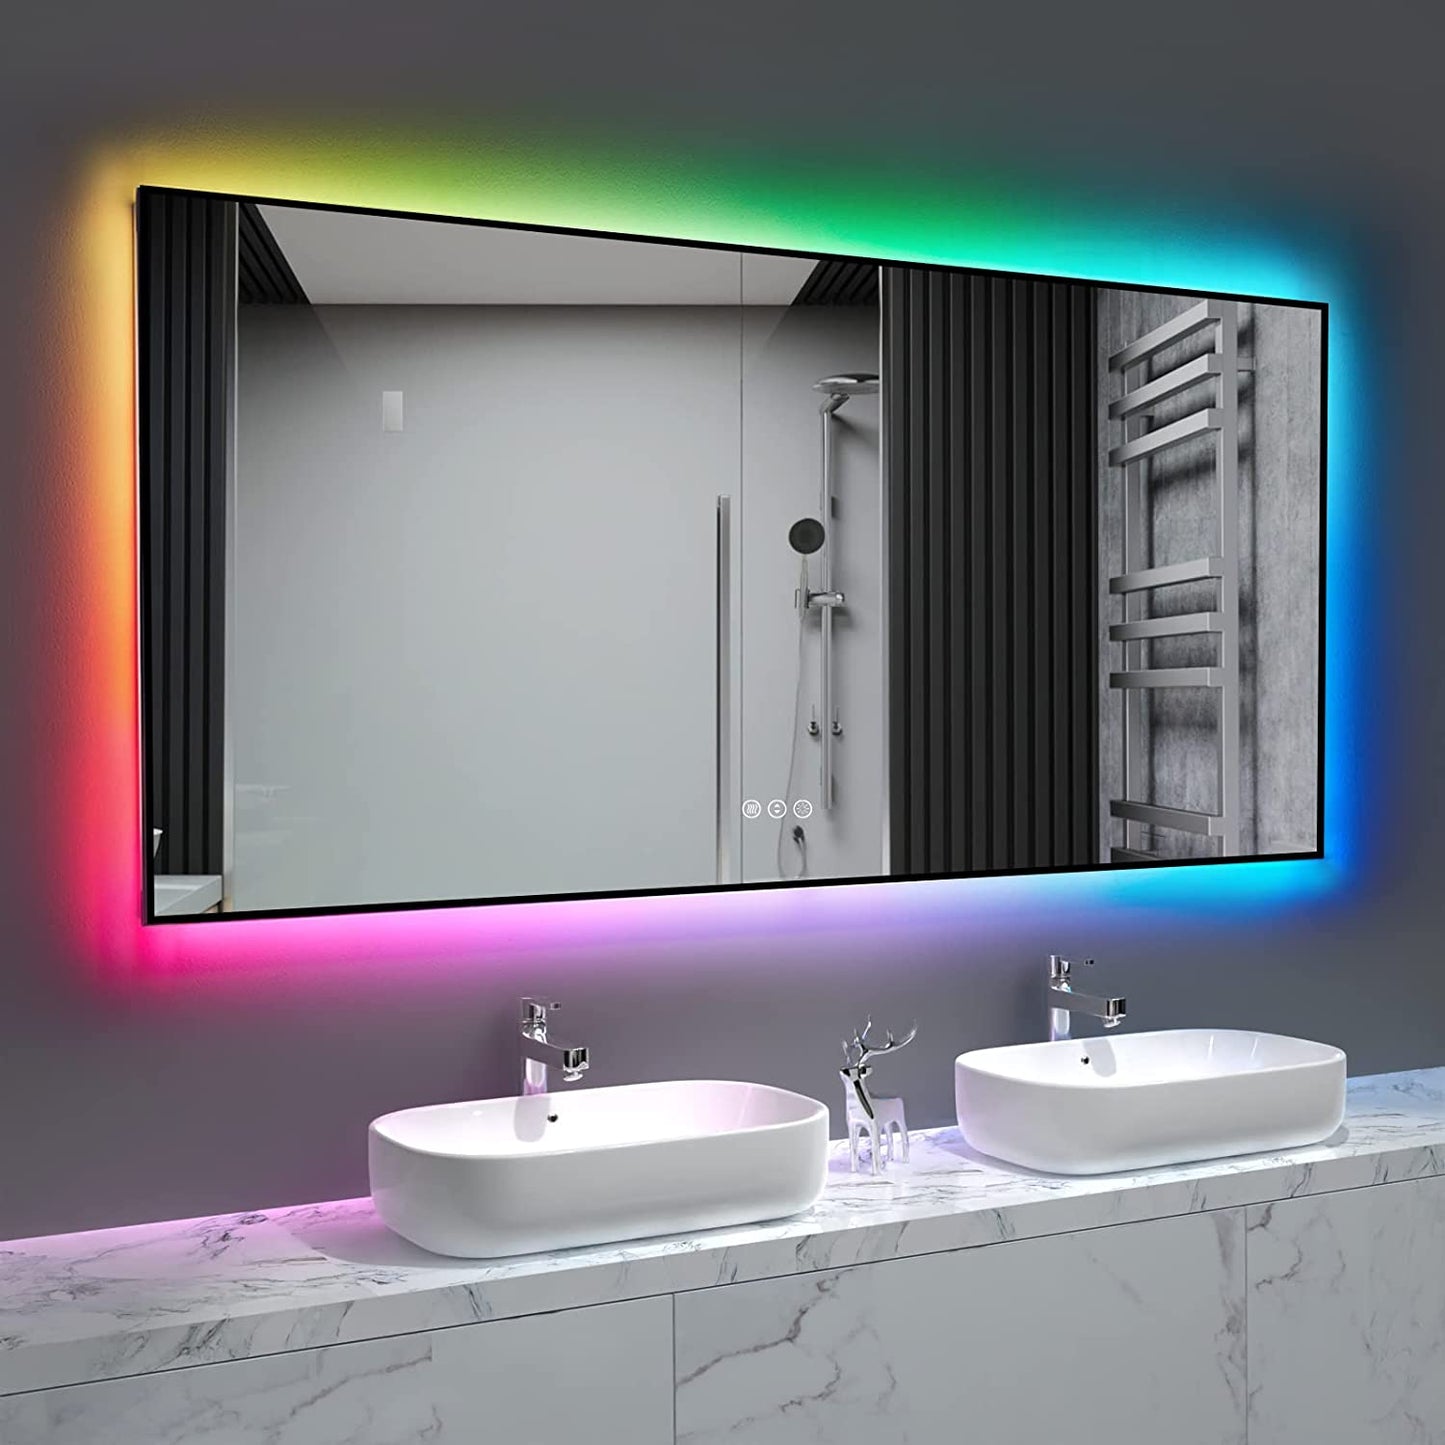 Amorho LED Bathroom Mirror with RGB Backlit, 60"x28"